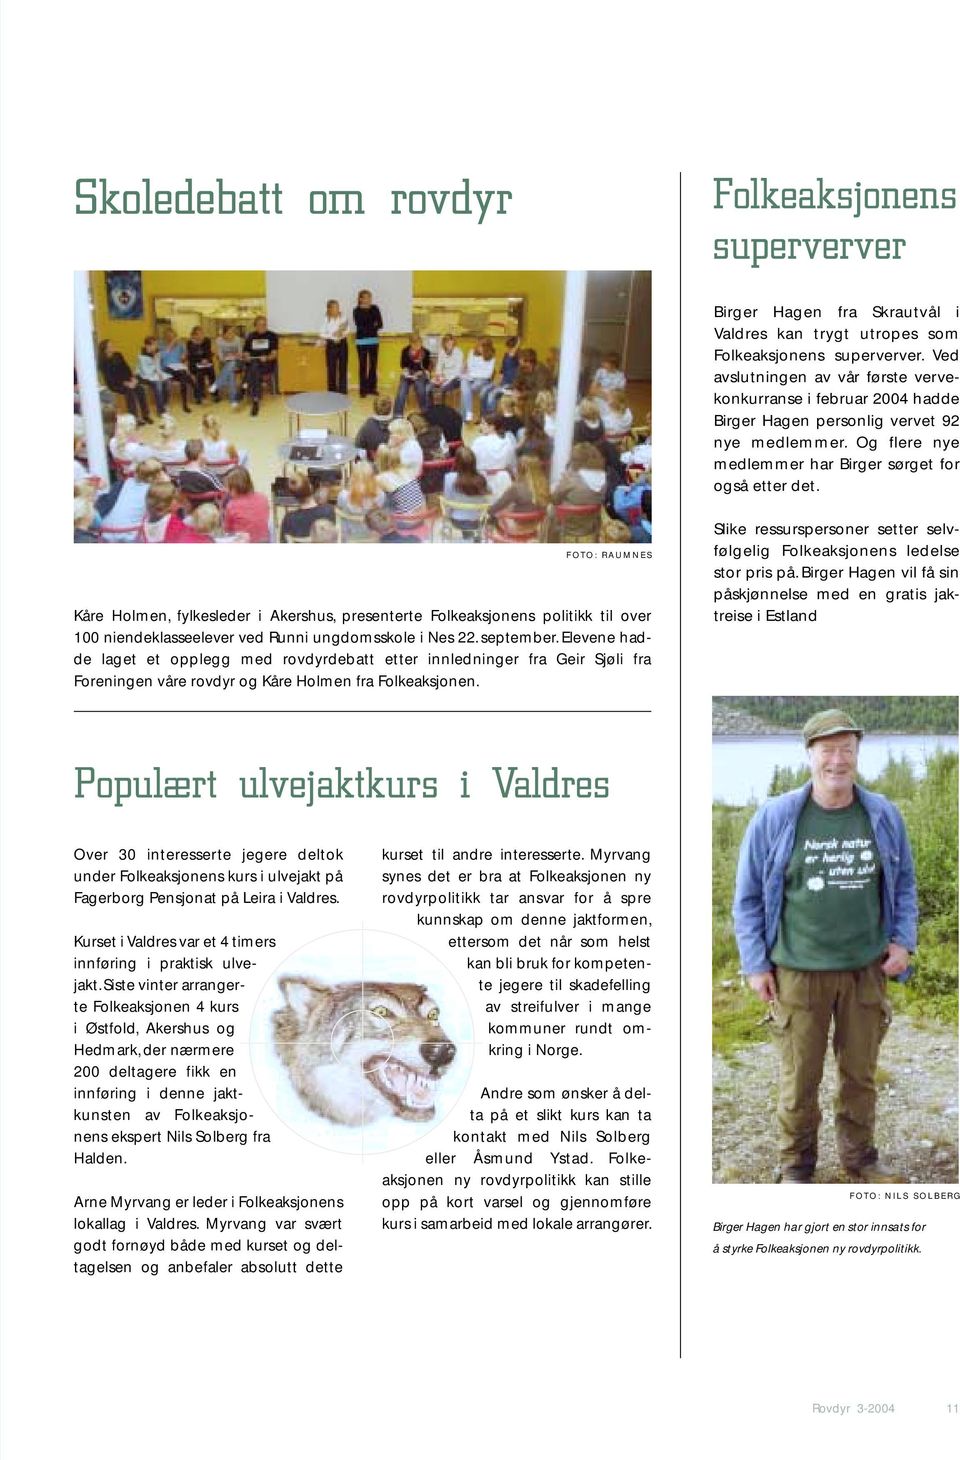 FOTO: RAUMNES Kåre Holmen, fylkesleder i Akershus, presenterte Folkeaksjonens politikk til over 100 niendeklasseelever ved Runni ungdomsskole i Nes 22. september.